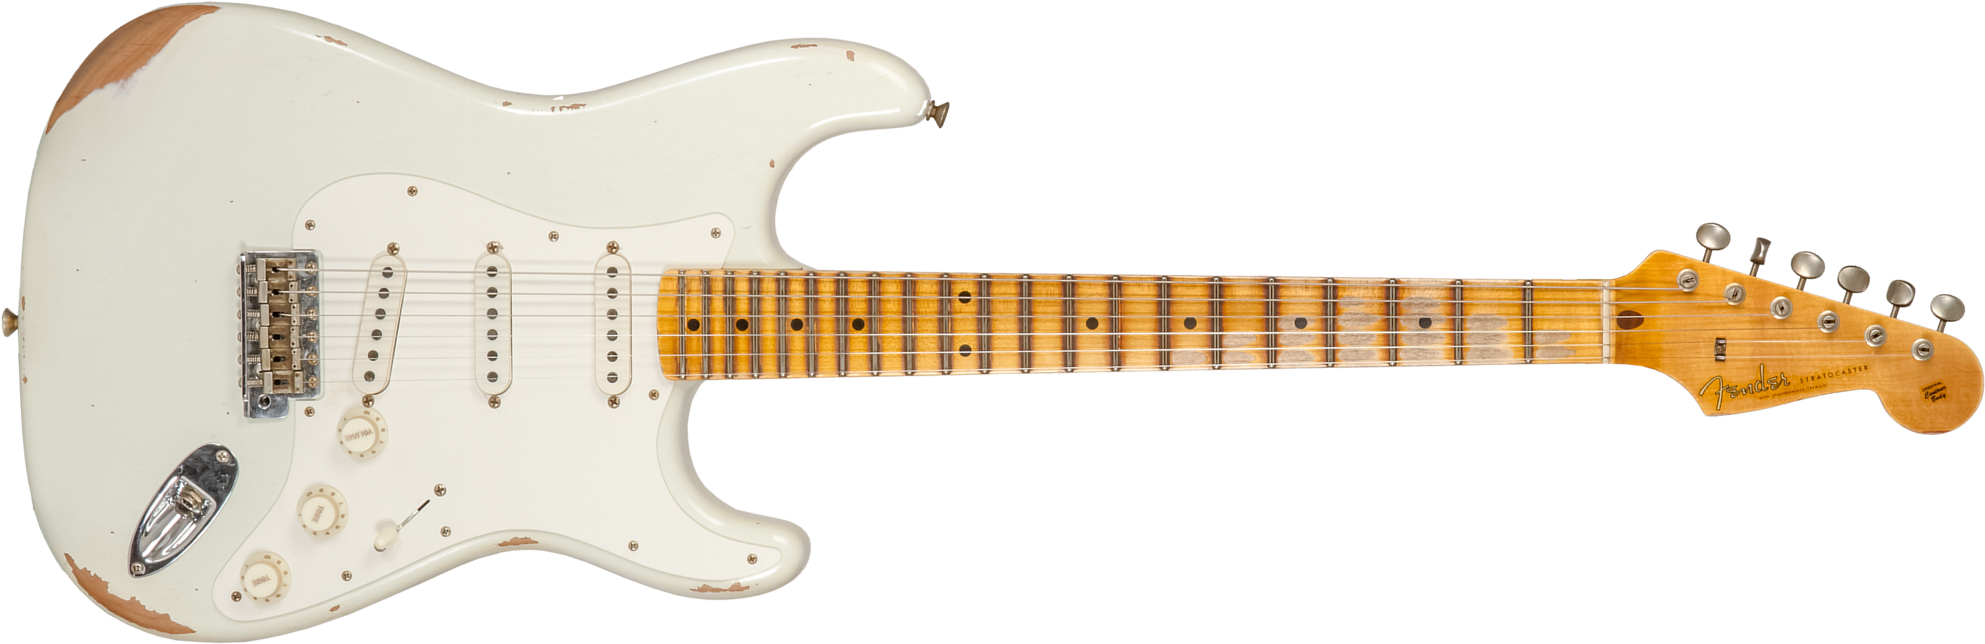 Fender Custom Shop Strat Fat 50's 3s Trem Mn #cz570495 - Relic India Ivory - Guitare Électrique Forme Str - Main picture